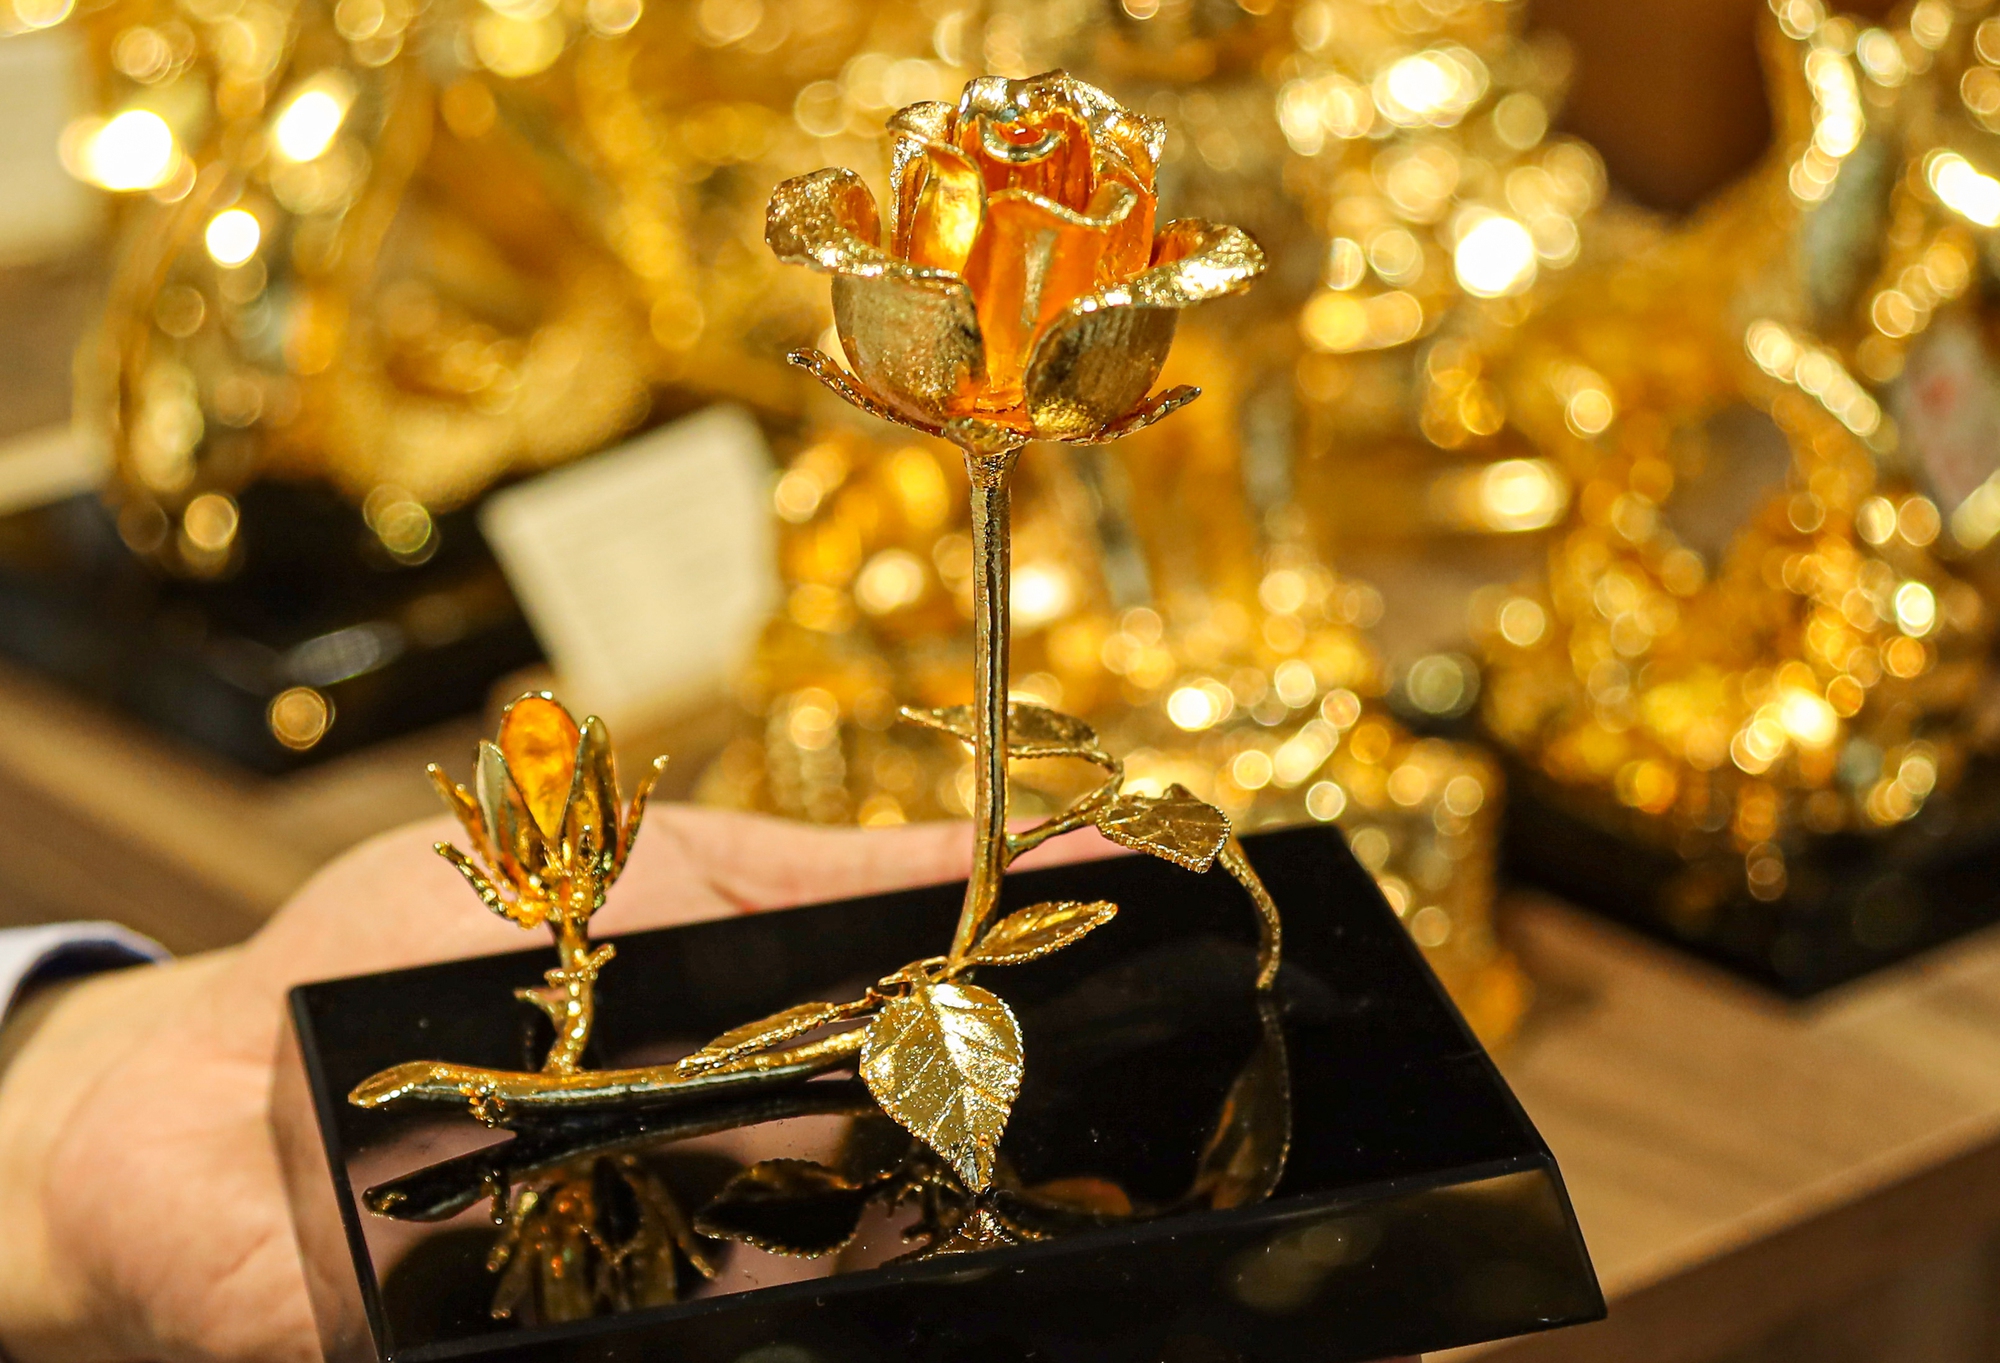 Hoa hồng mạ vàng 24K giá bạc triệu hút khách trước ngày Valentine - Ảnh 6.